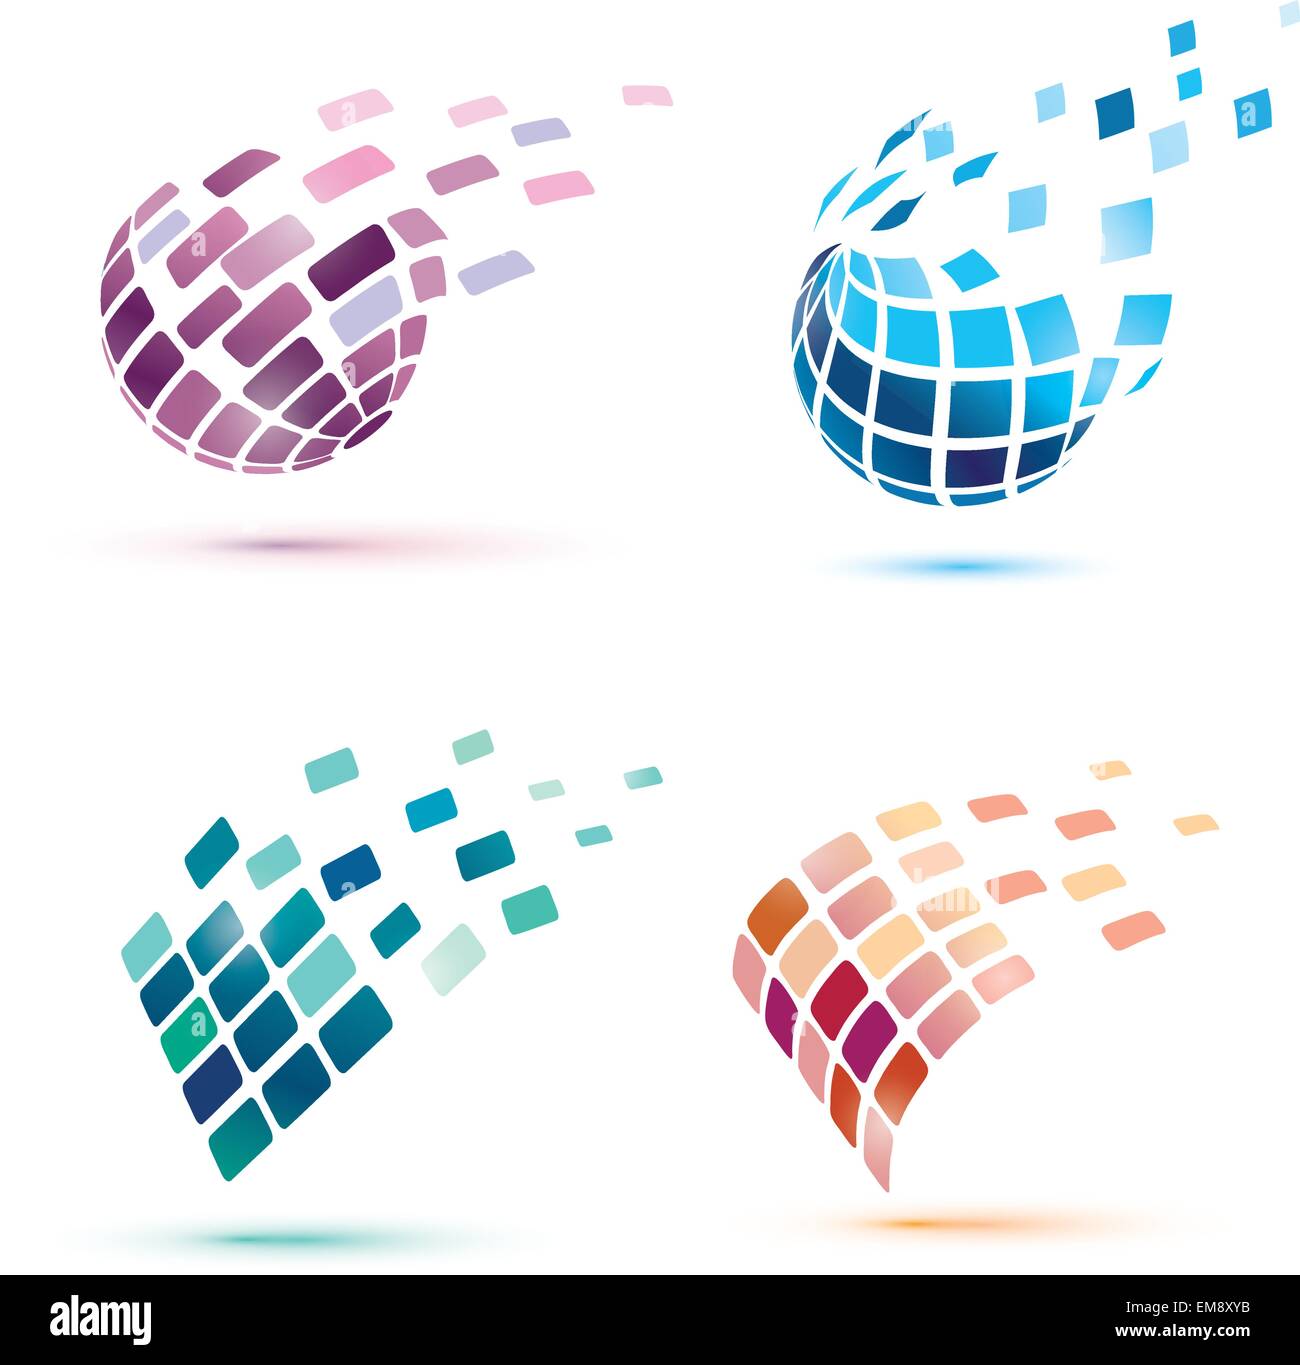 Globo astratto icone, business e comunication concept Illustrazione Vettoriale